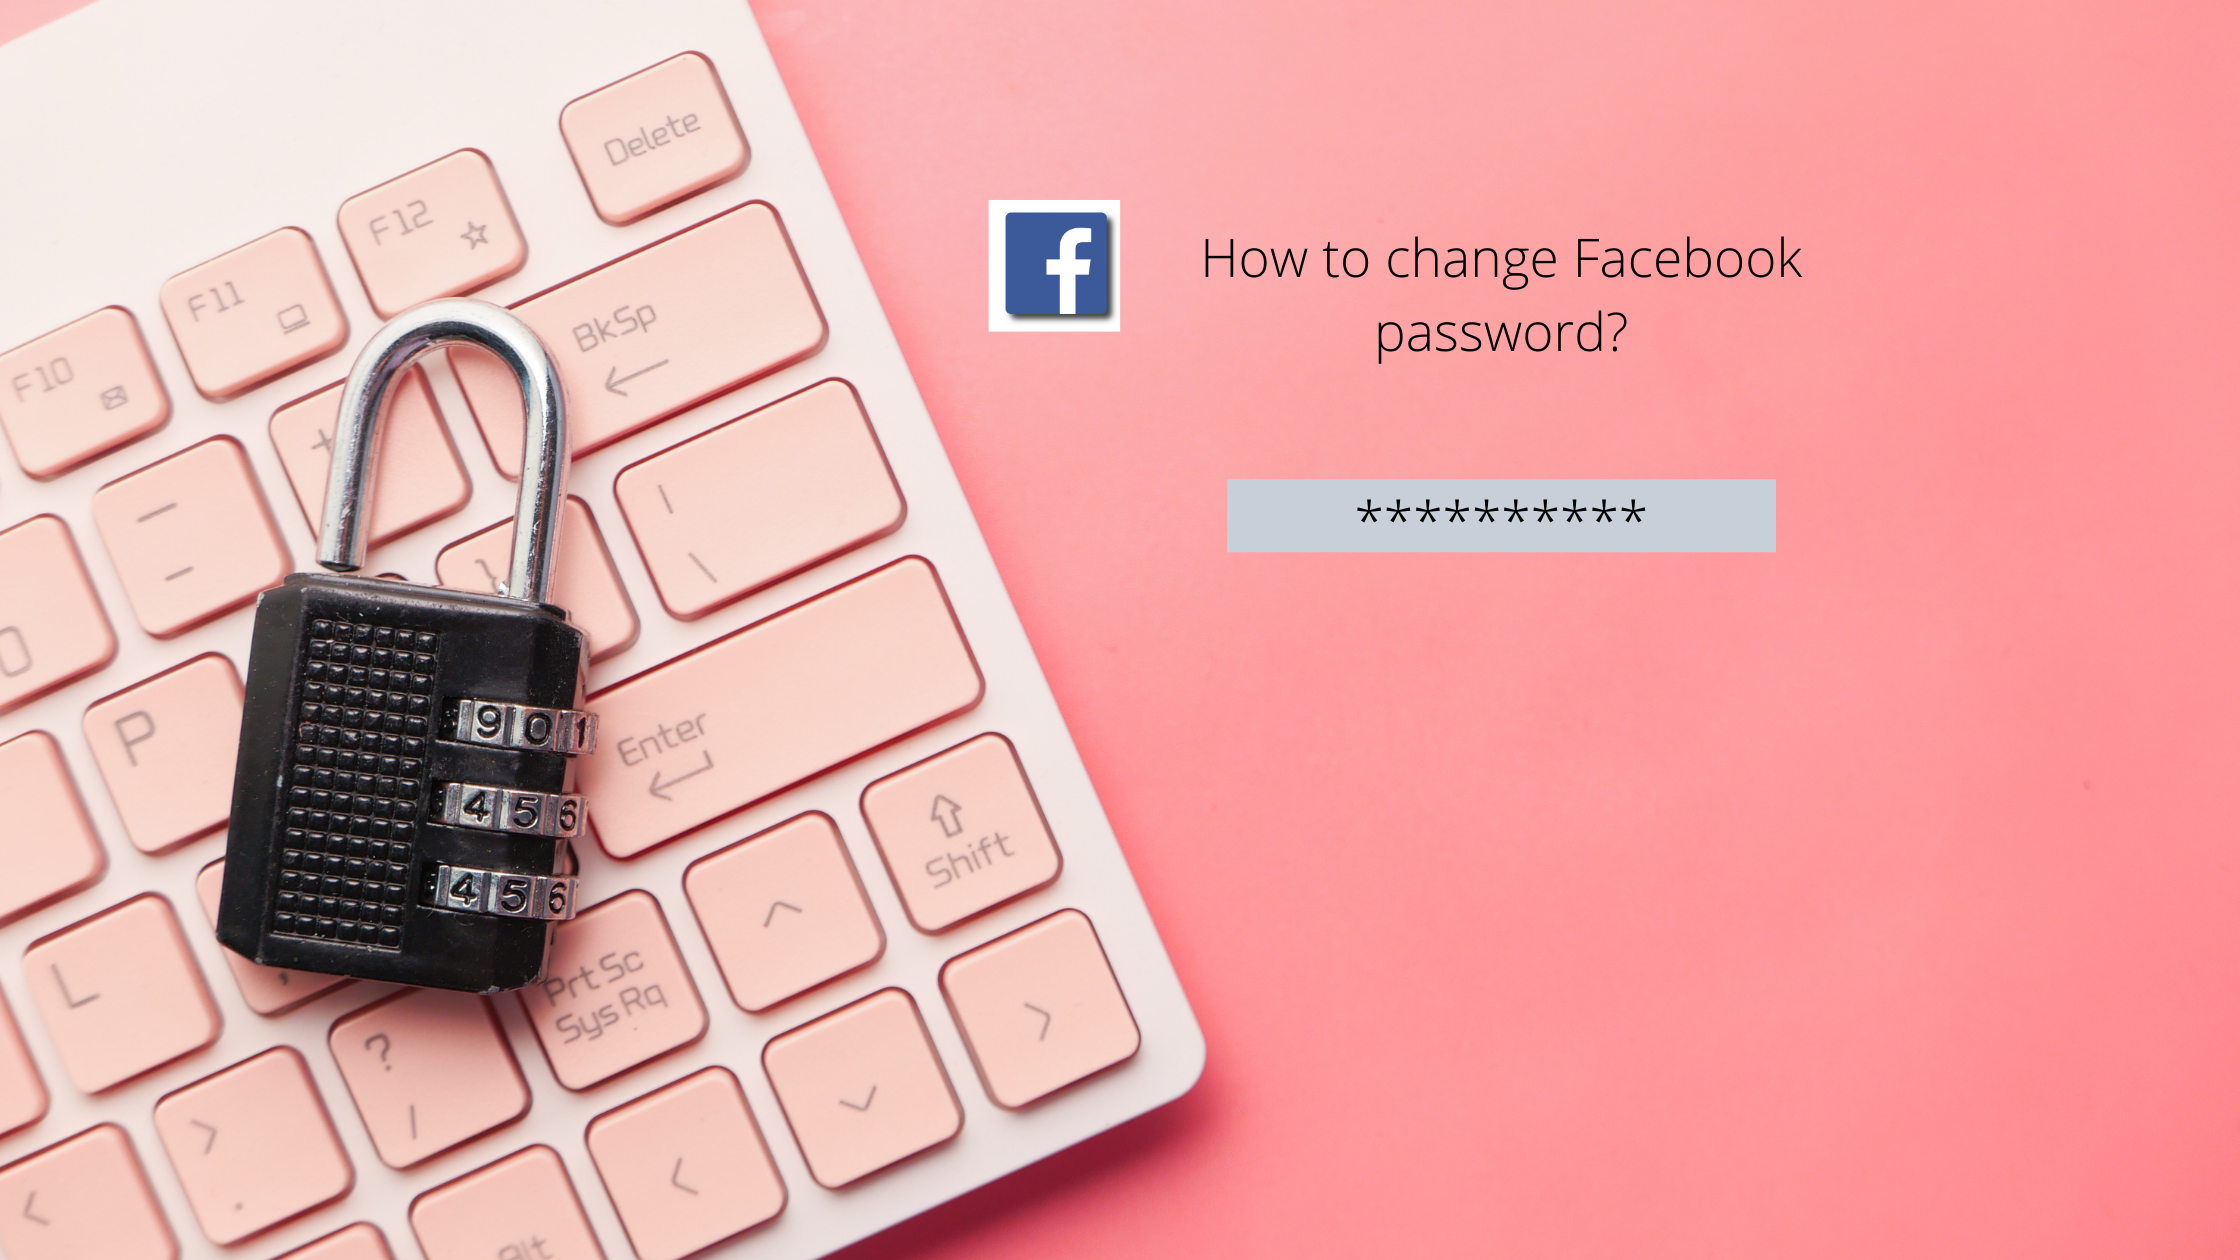 How to change Facebook password?